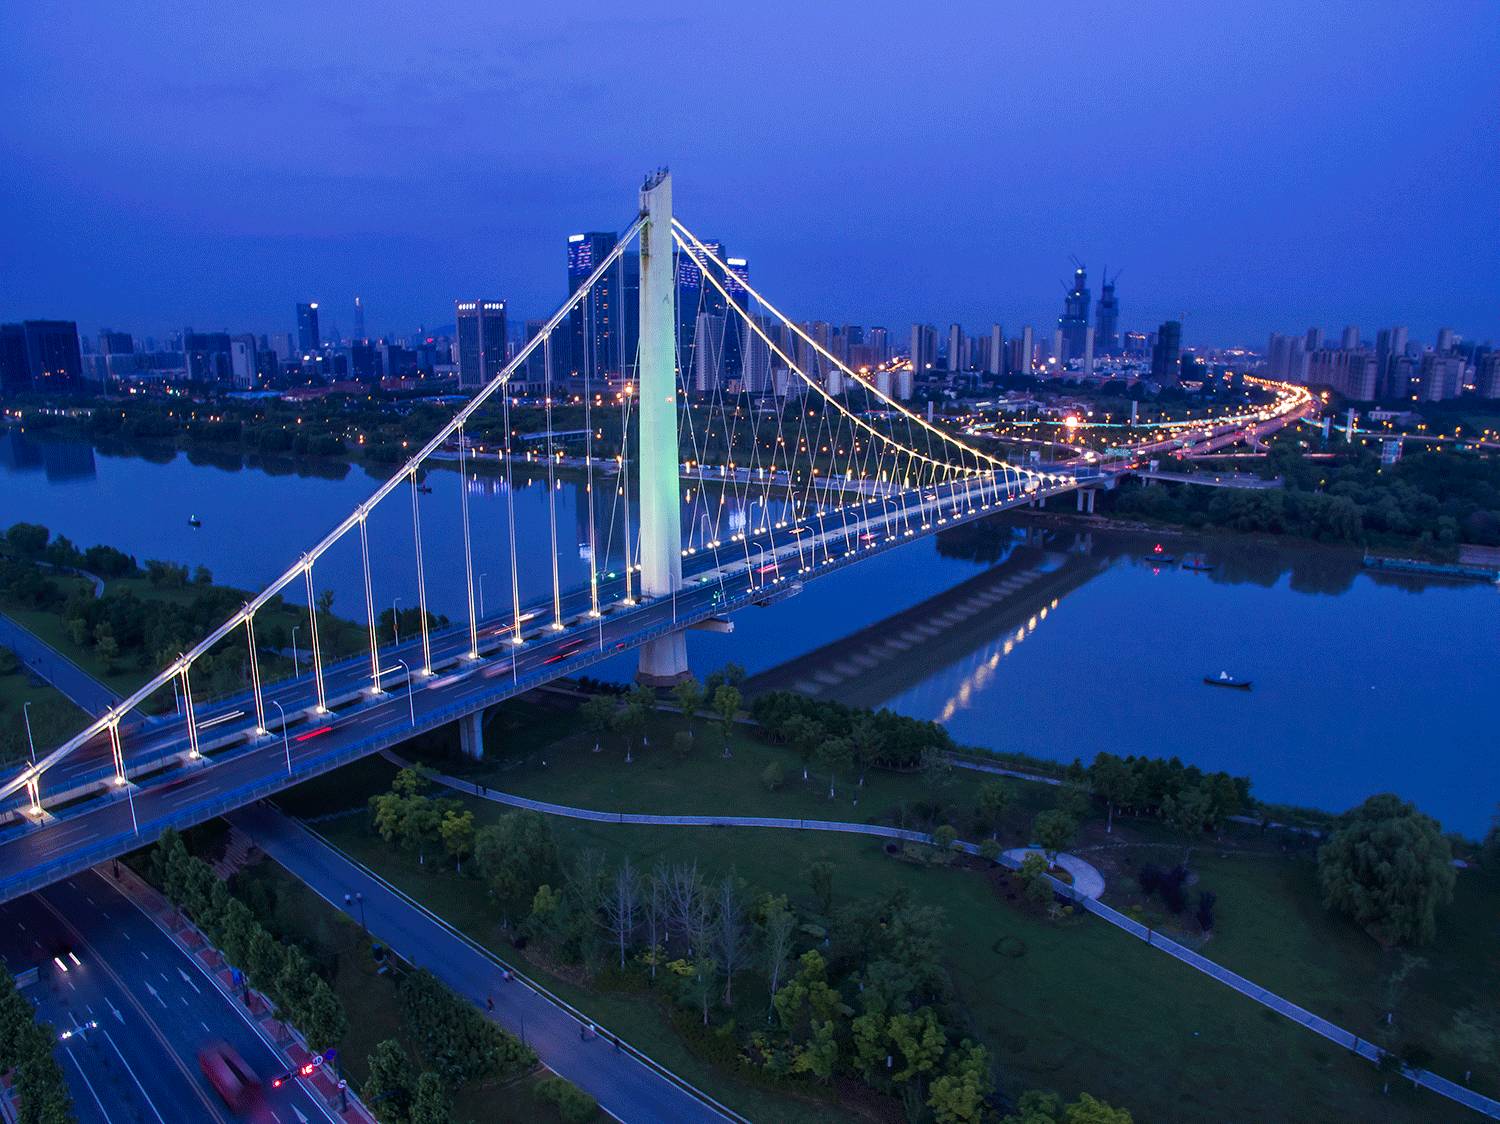 南京夹江大桥图片